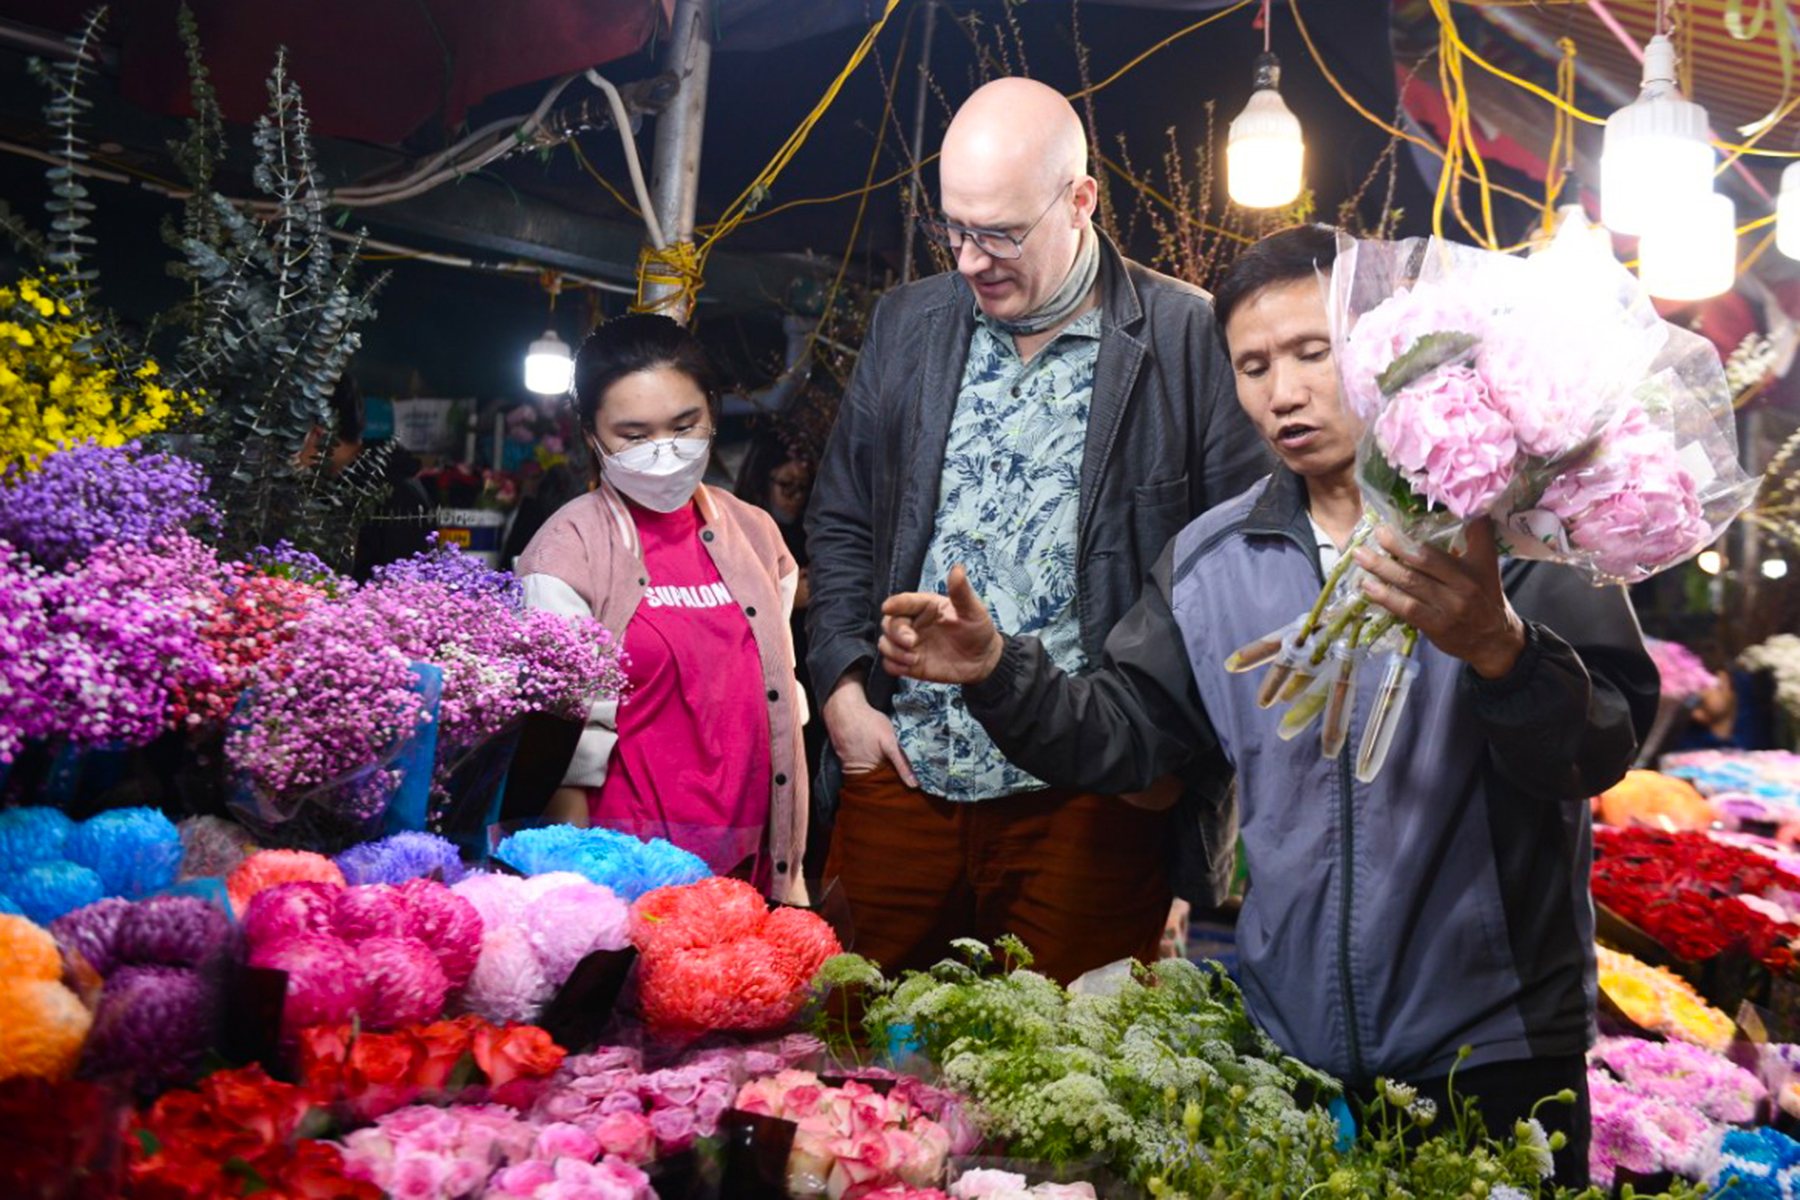 Hoa hồng tăng gấp 3 lần, chợ hoa lớn nhất Hà Nội đông nghịt người trước 8.3 - Ảnh 9.